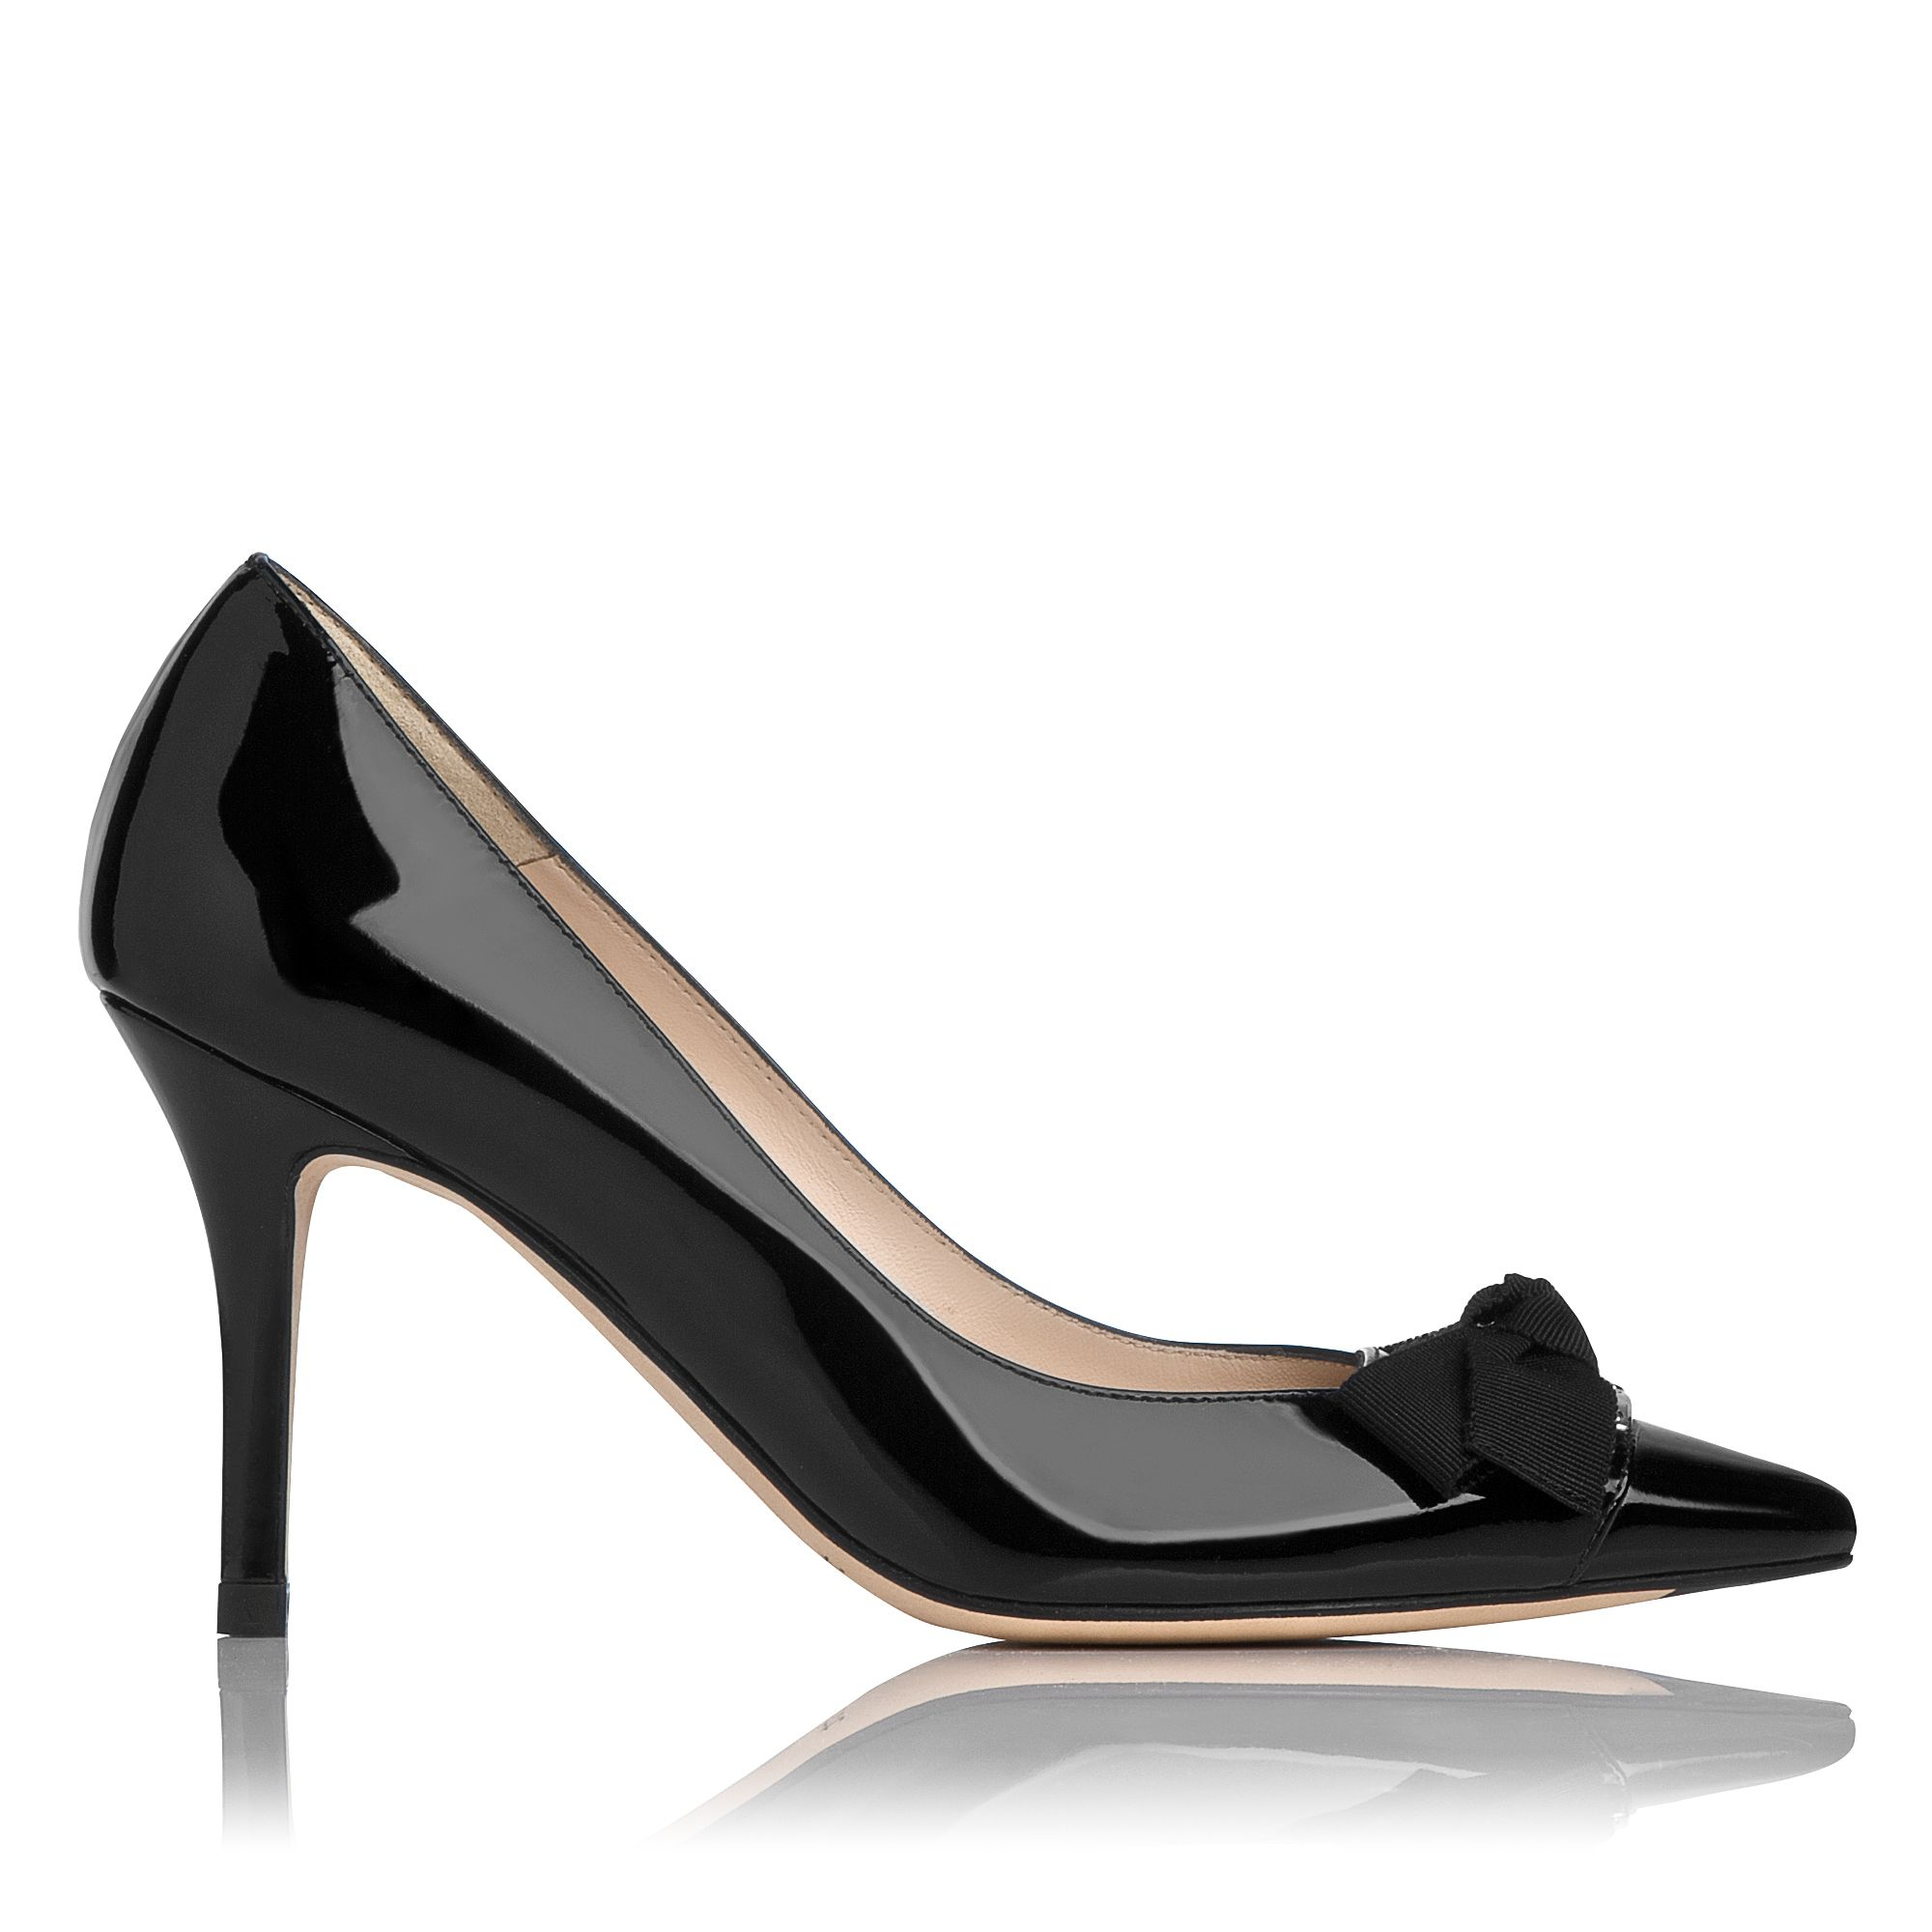 L.k.bennett Irene Patent Court Shoe in Black | Lyst